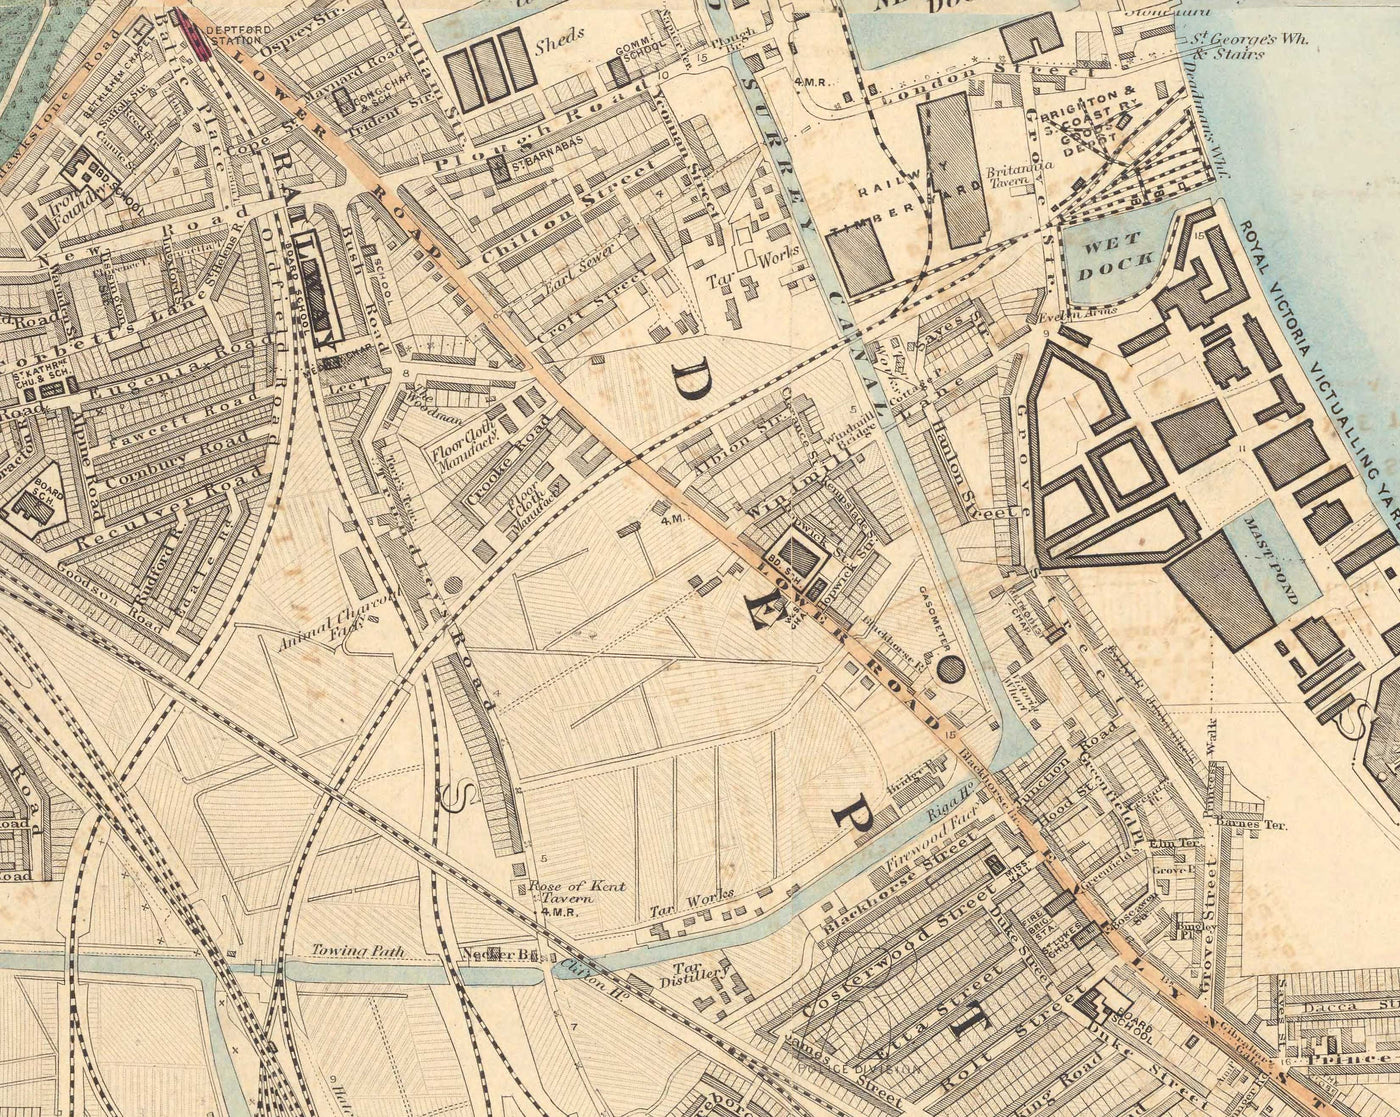 Alte Farbkarte von Süd-London im Jahr 1891 - Greenwich, Deptford, New Cross, Telegraph Hill, Blackheath - SE8, SE14, SE10 SE4 SE13